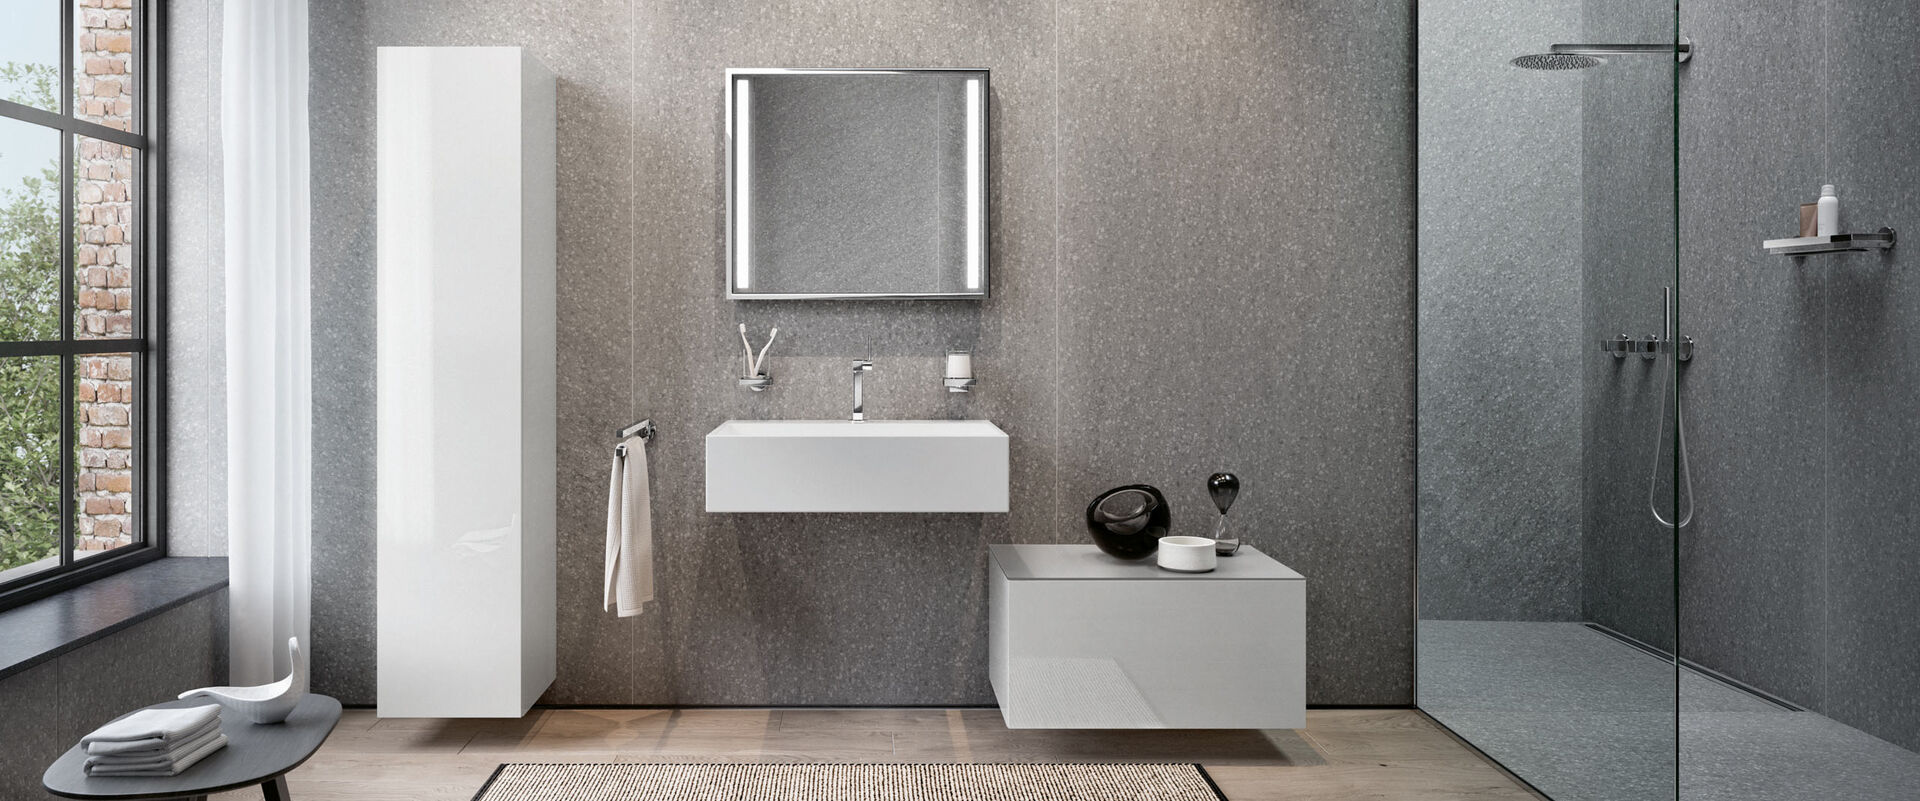 Top-Design fürs ganze Bad: Edition 90 umfasst mit Badmöbeln, Armaturen und passenden Accessoires wichtige Bereiche im Badezimmer – hochwertig, flexibel und geradlinig.